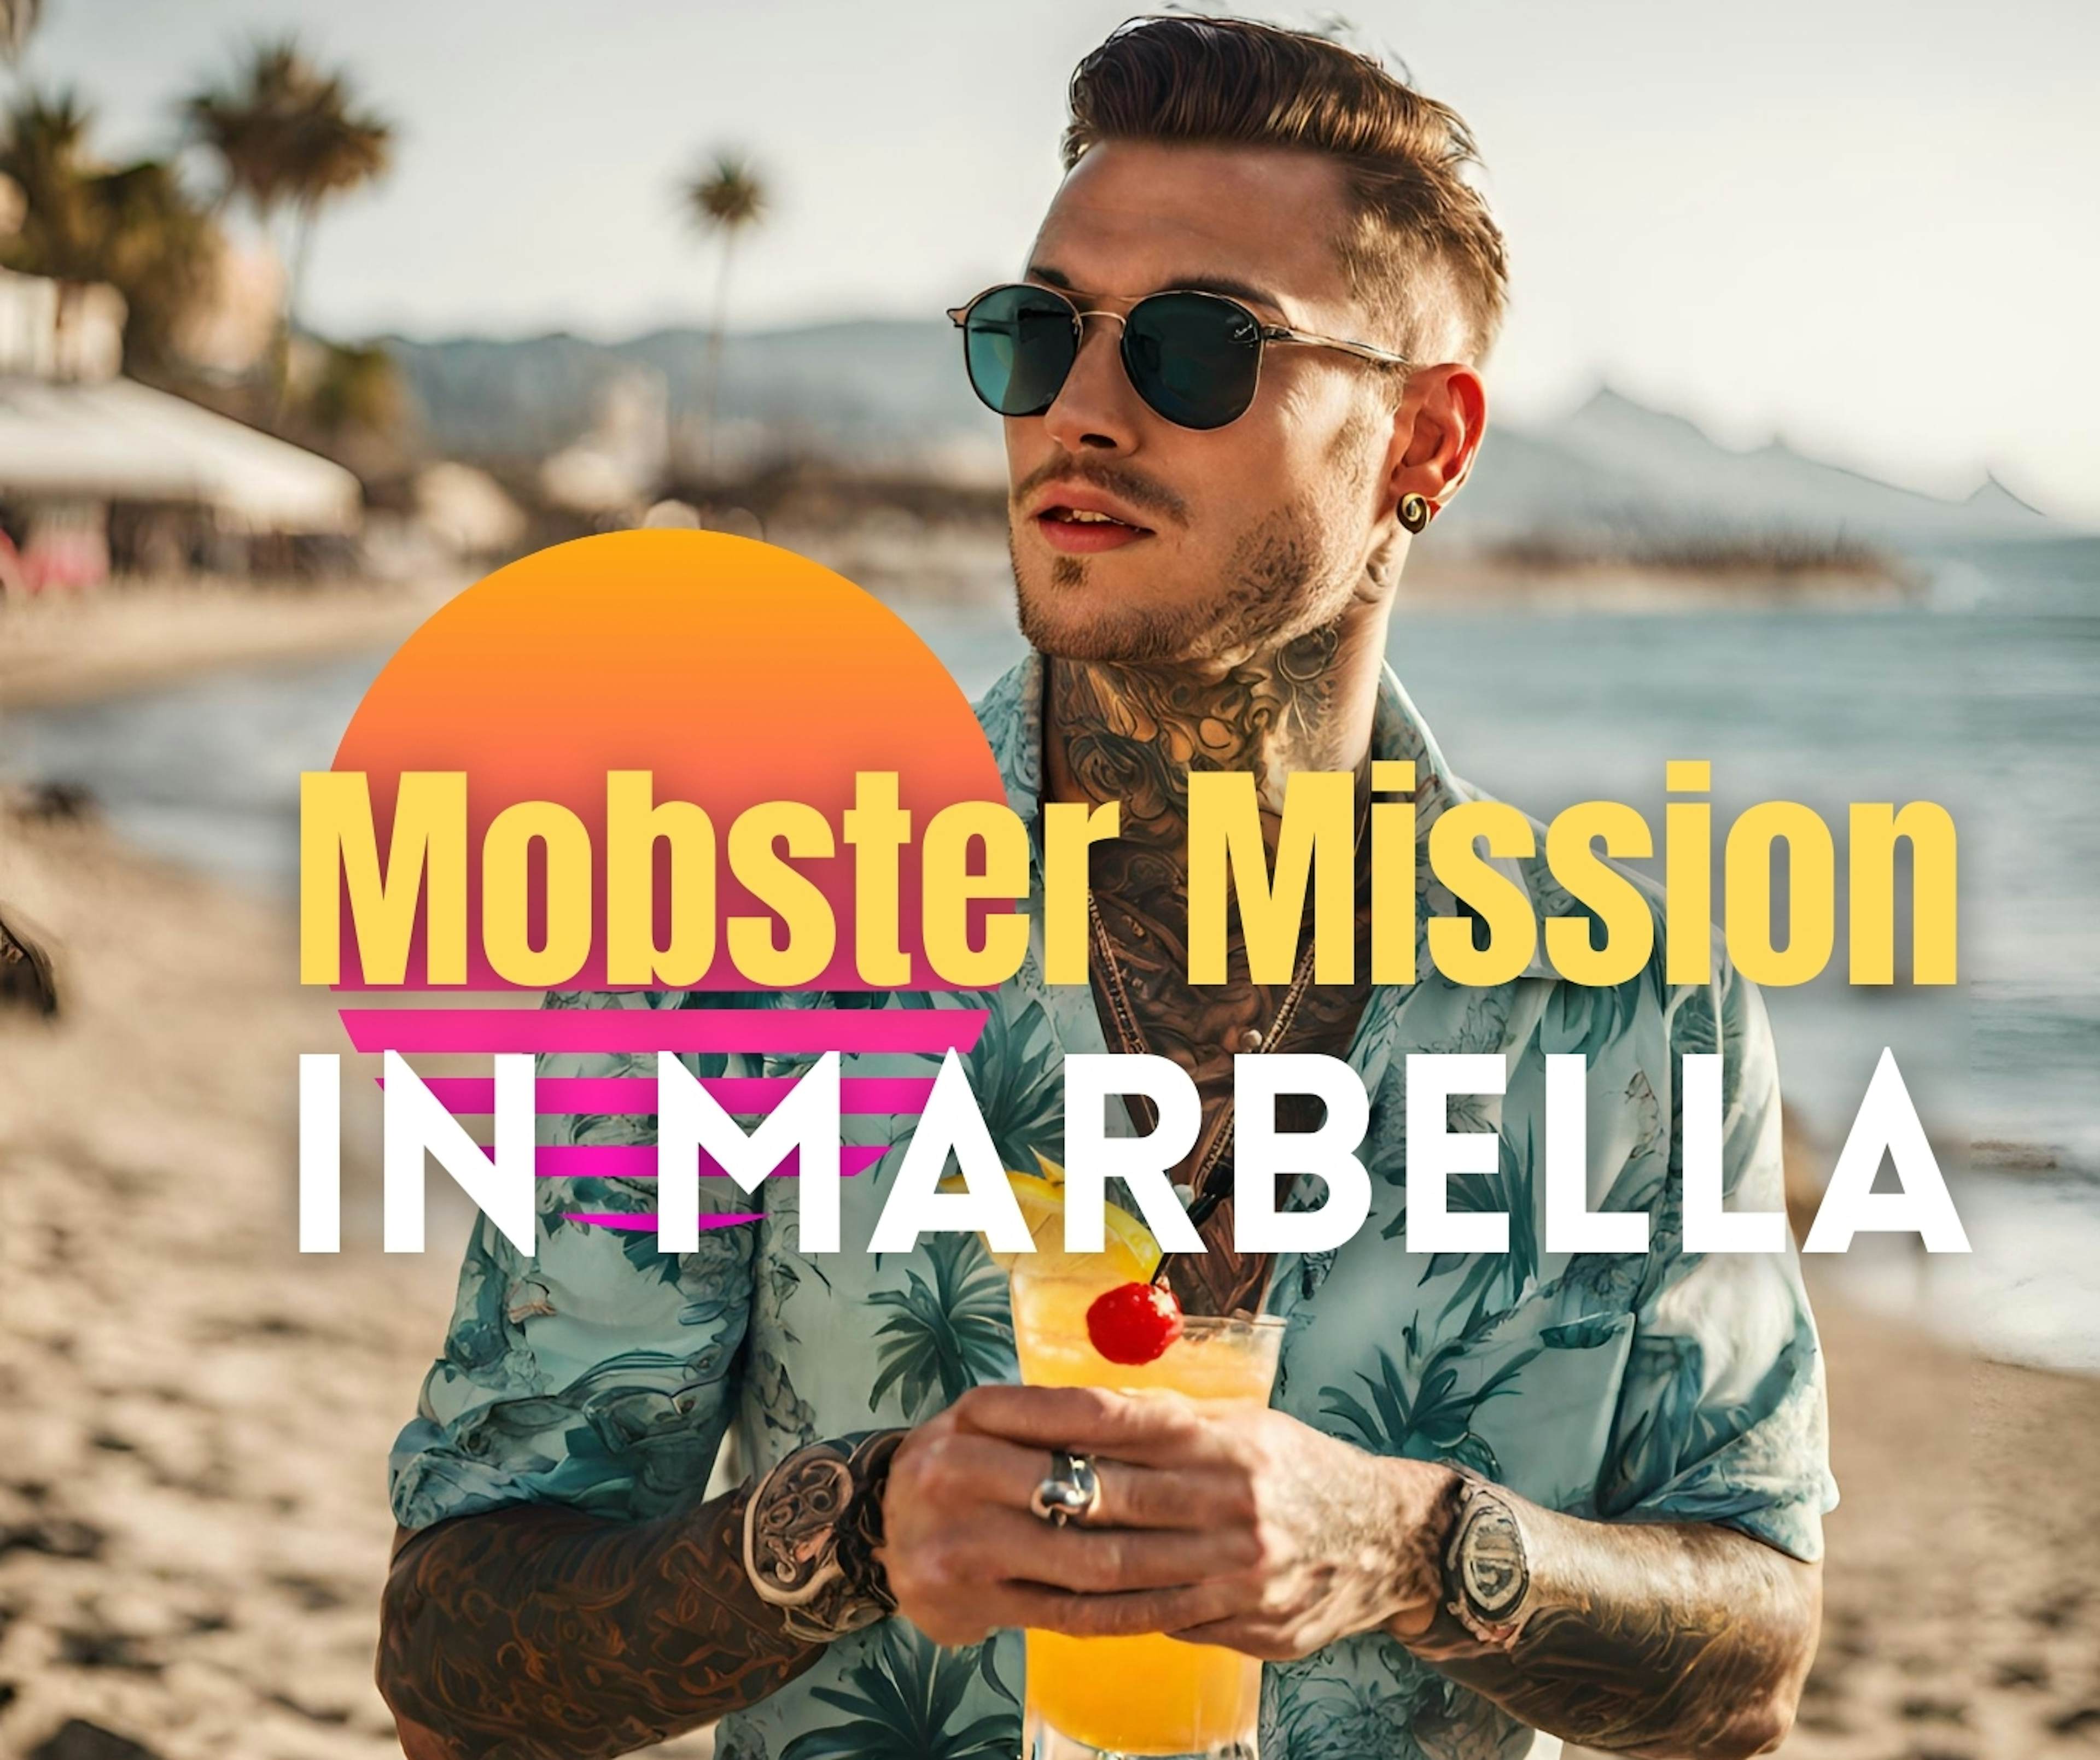 Mobster Mission in Marbella image